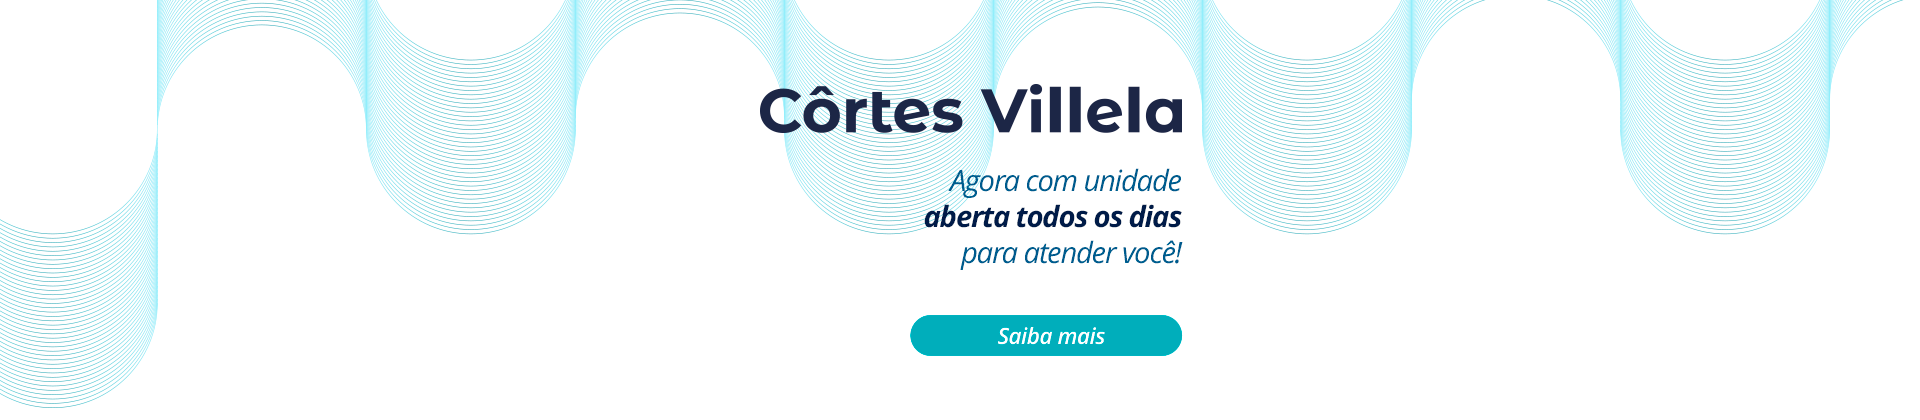 Côrtes Villela – agora com unidade aberta todos os dias para atender você!